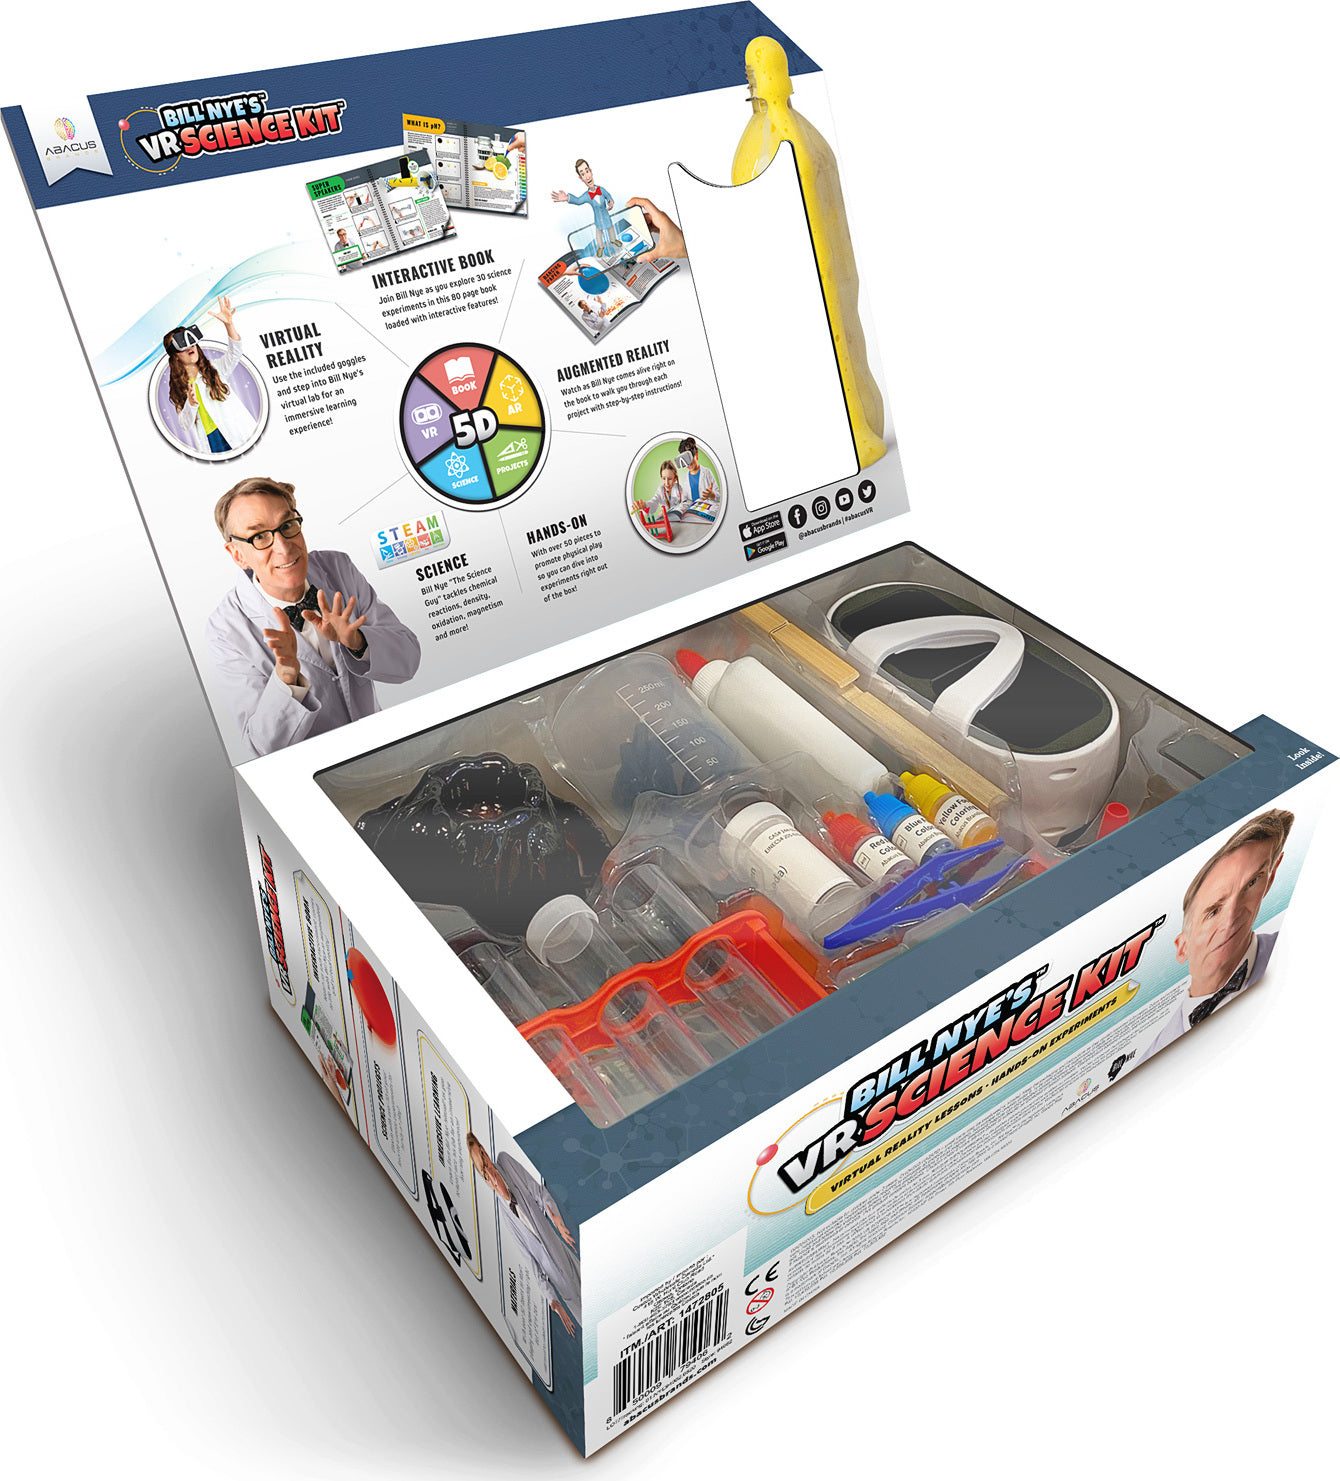 Bill Nye&#39;s VR Science Kit (TOTY Winner)